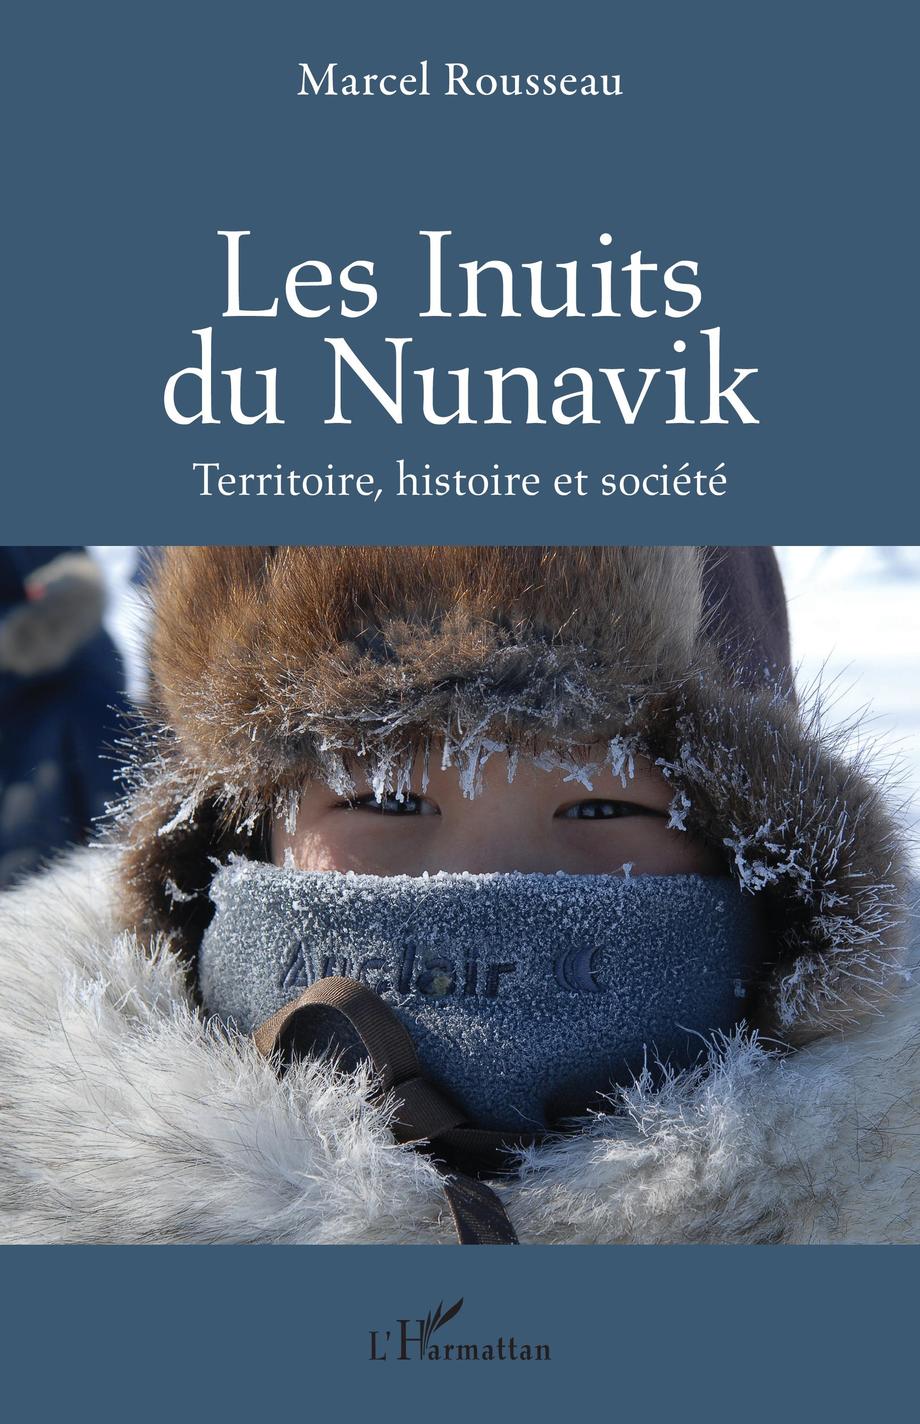 Les Inuits du Nunavik / Marcel Rousseau